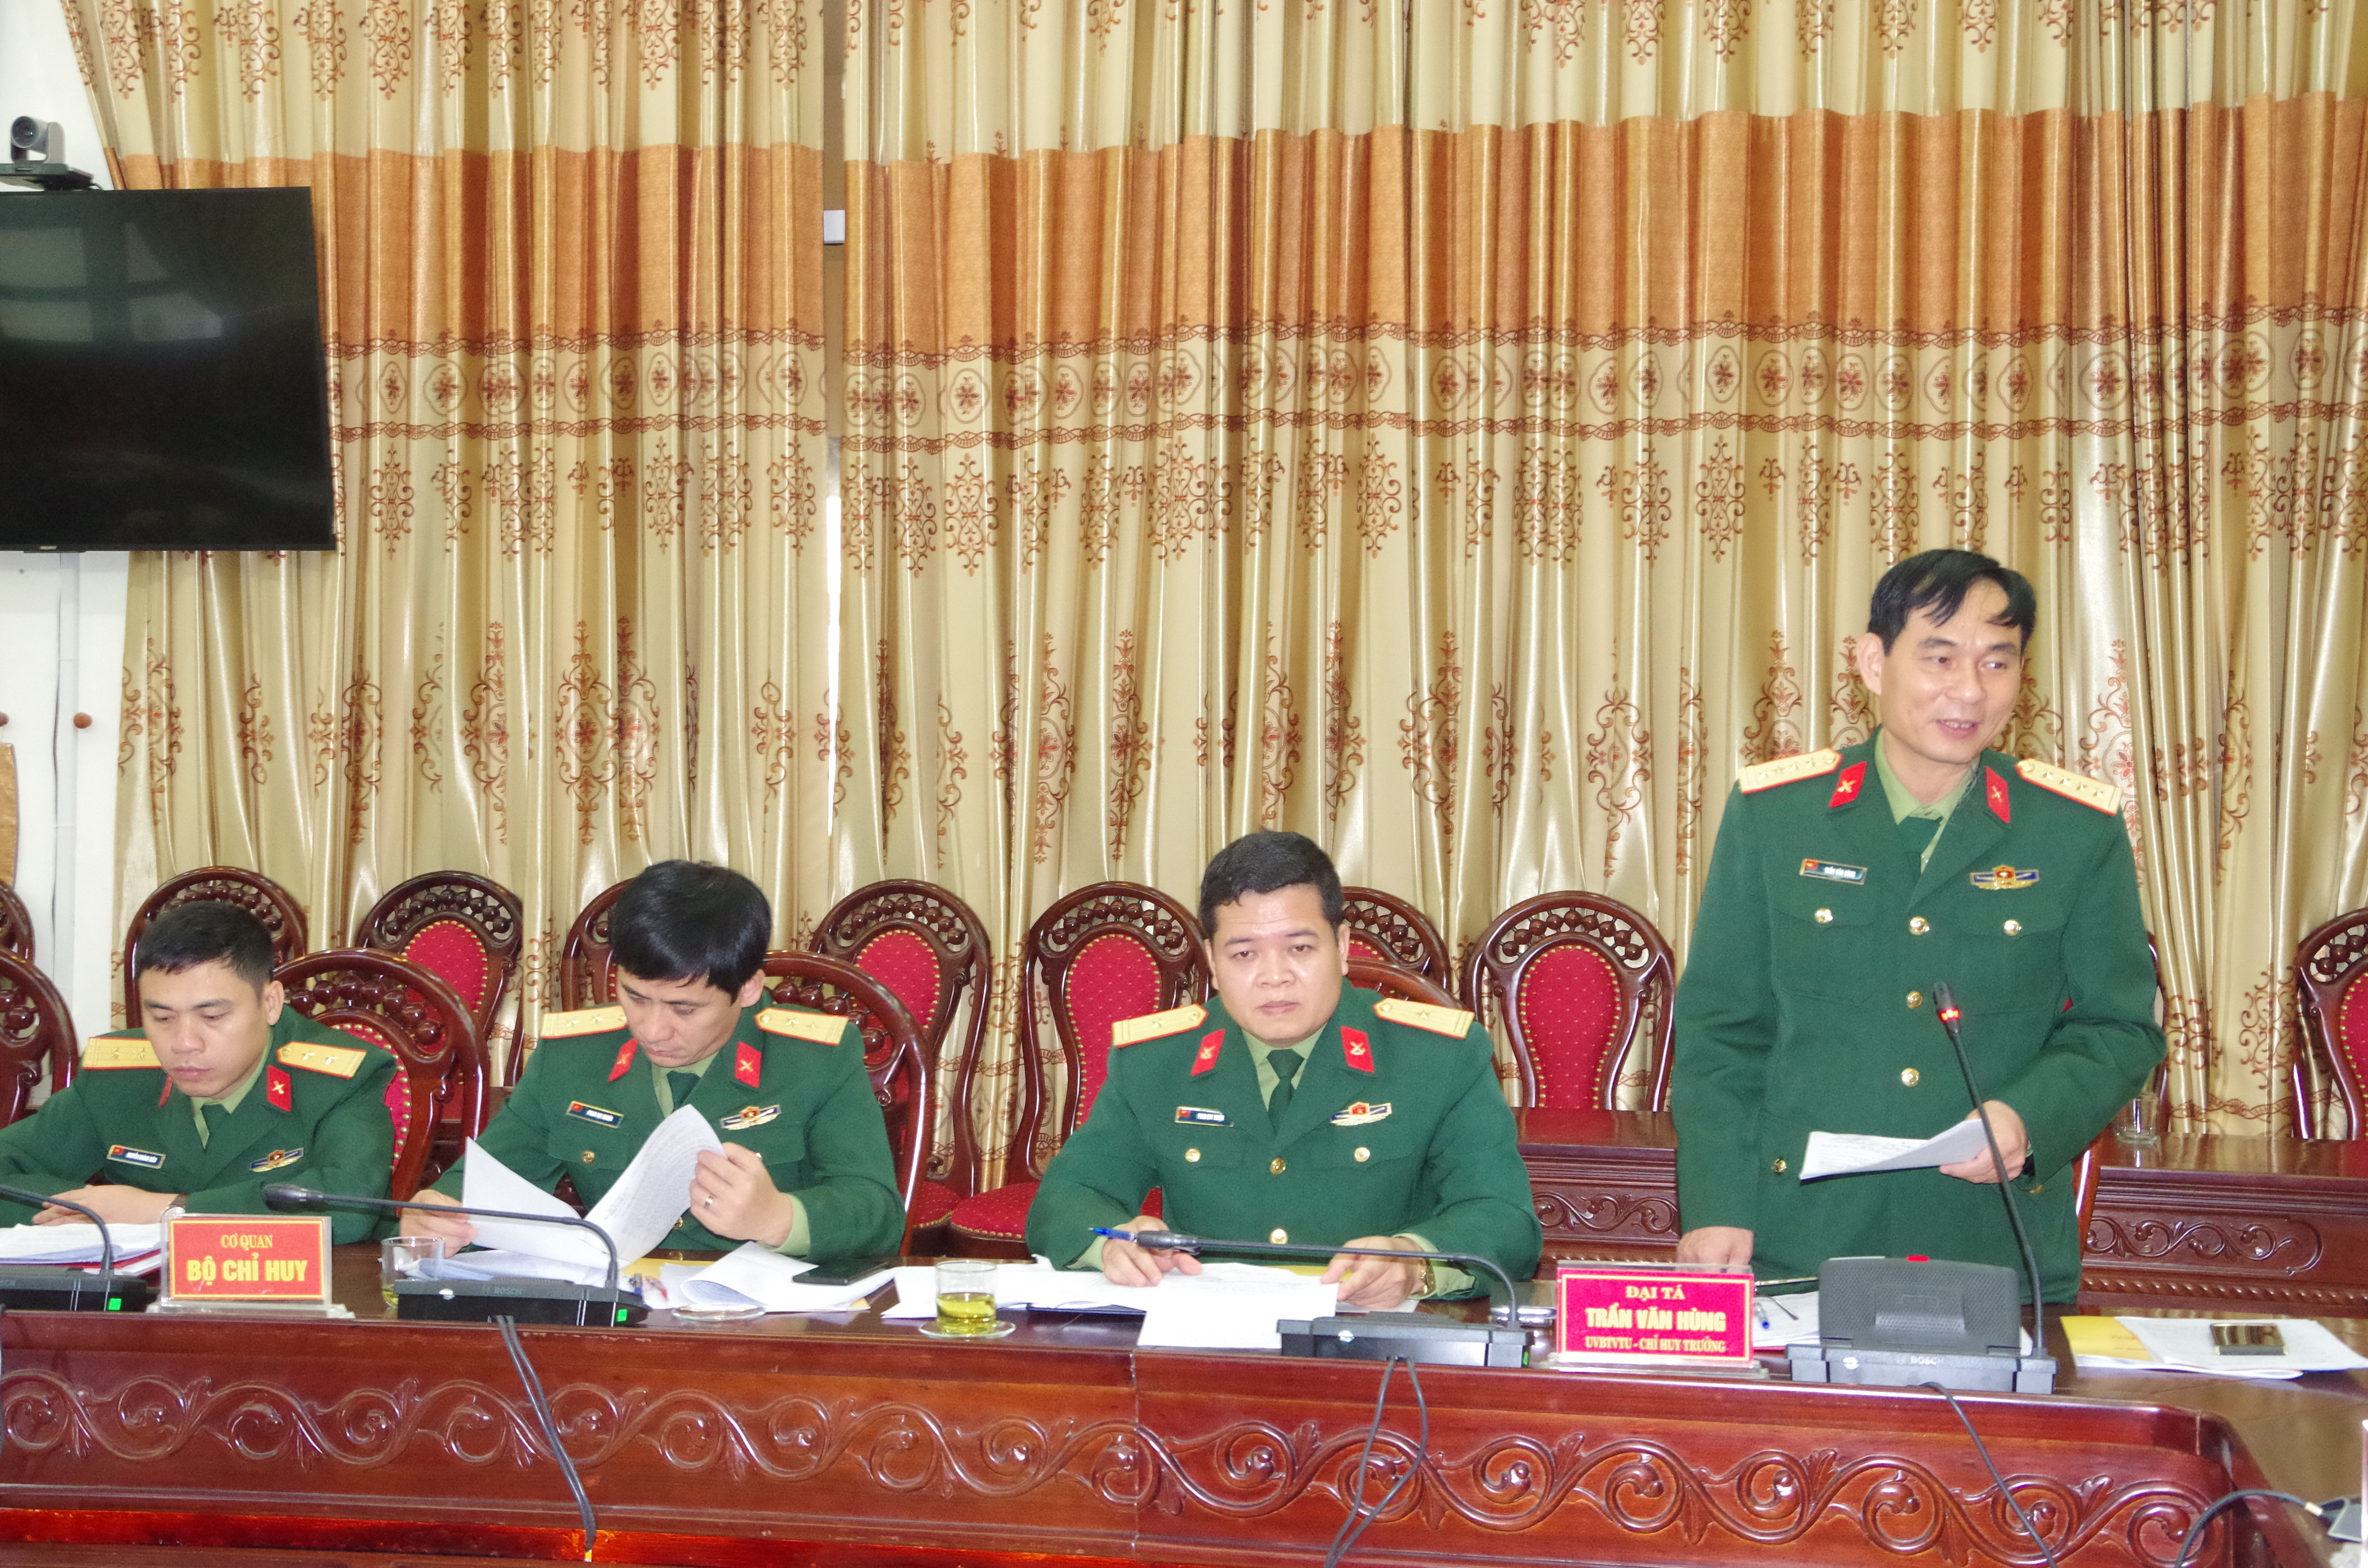 Đại tá Trần Văn Hùng - Ủy viên Ban Thường vụ Tỉnh ủy, Chỉ huy trưởng Bộ CHQS tỉnh phát biểu tại buổi làm việc. Ảnh: Trọng Kiên